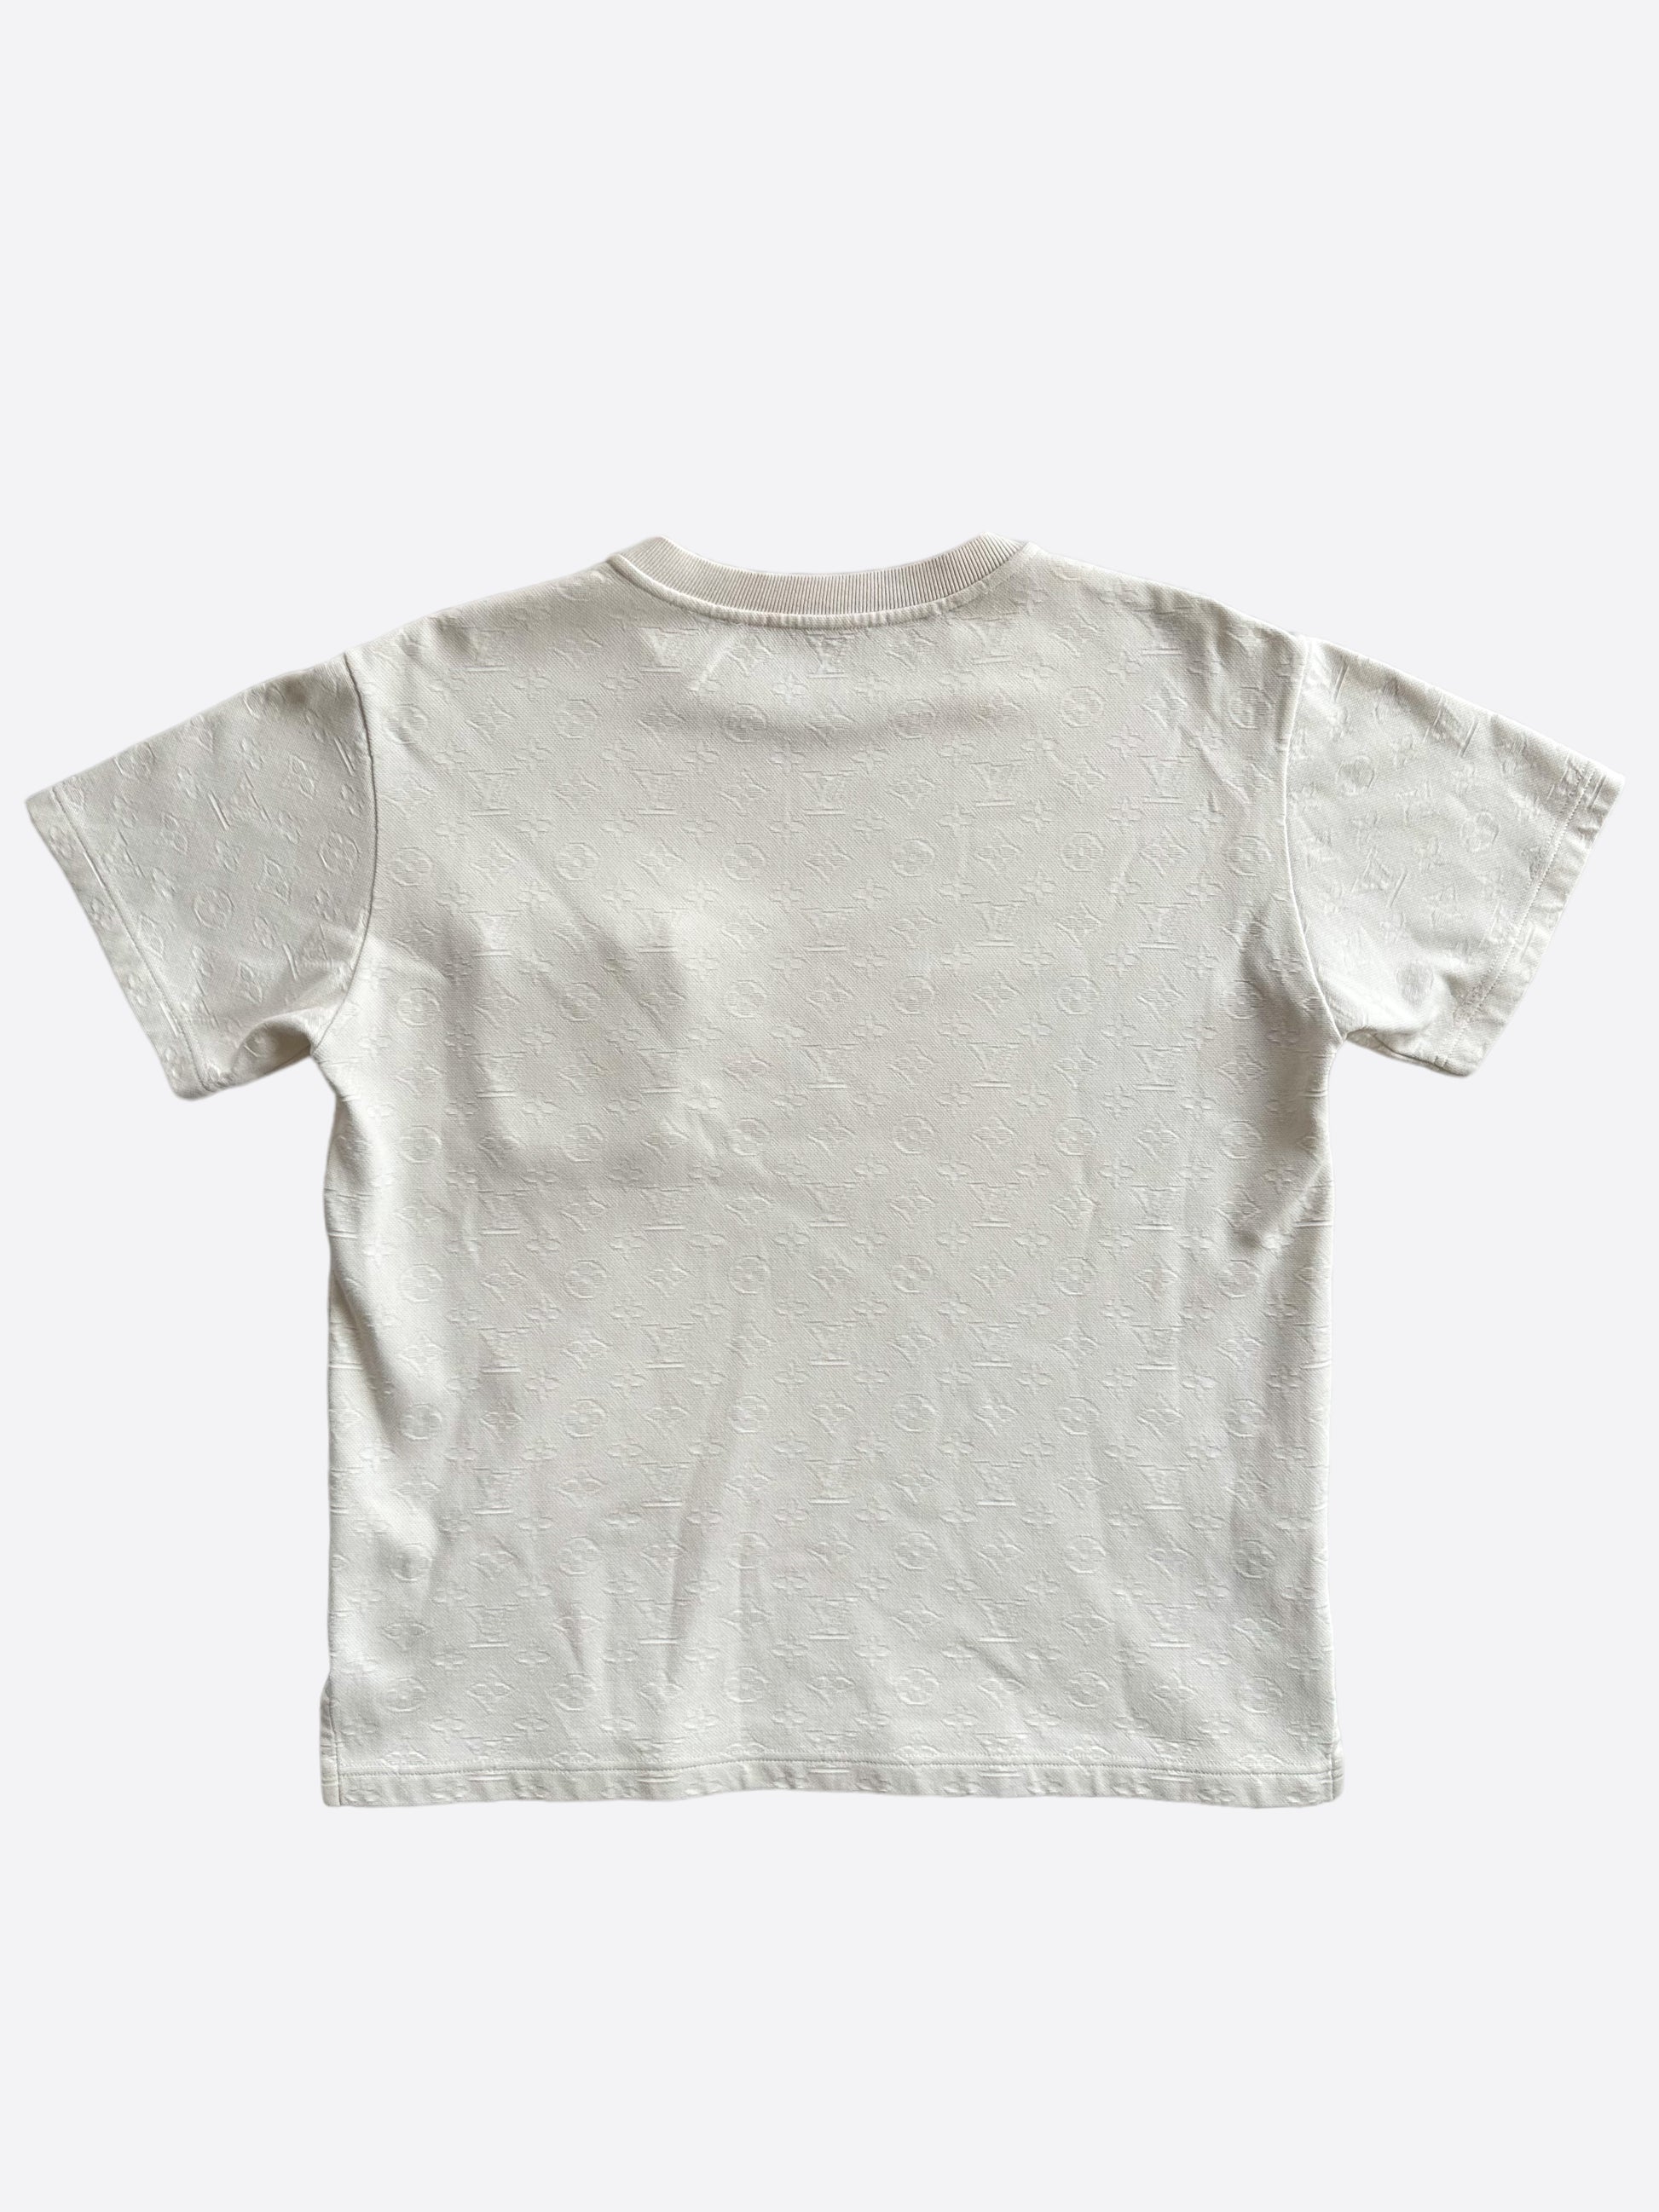 Louis Vuitton Tricolor Monogram T-Shirt White. Size Xs